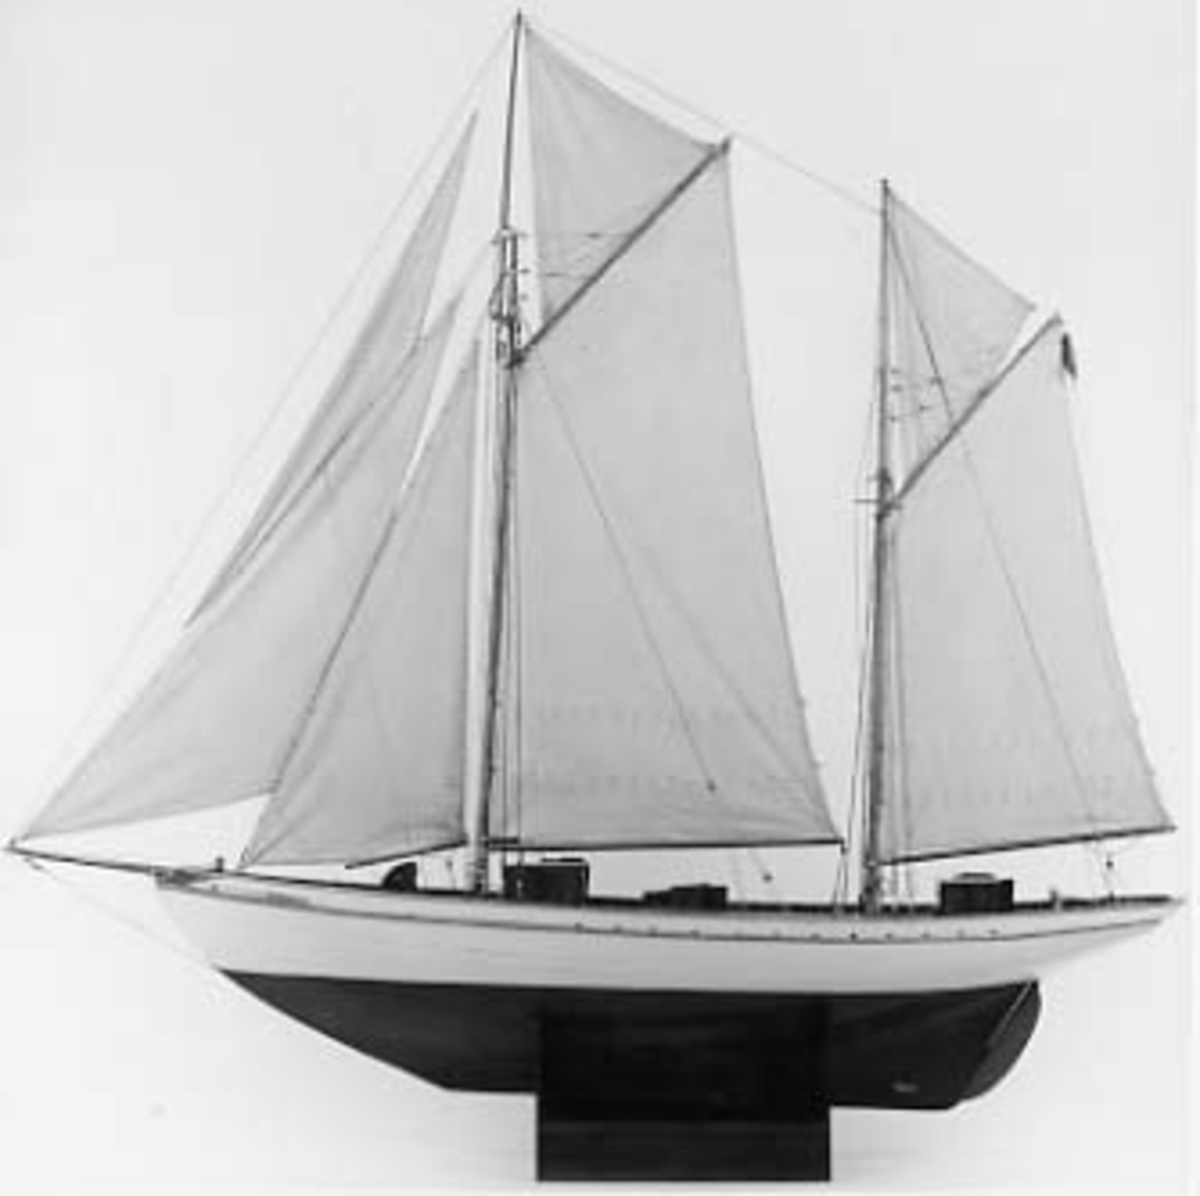 Fartygsmodell av KAPAREN. 
Ketchriggad med segel och bogspröt.